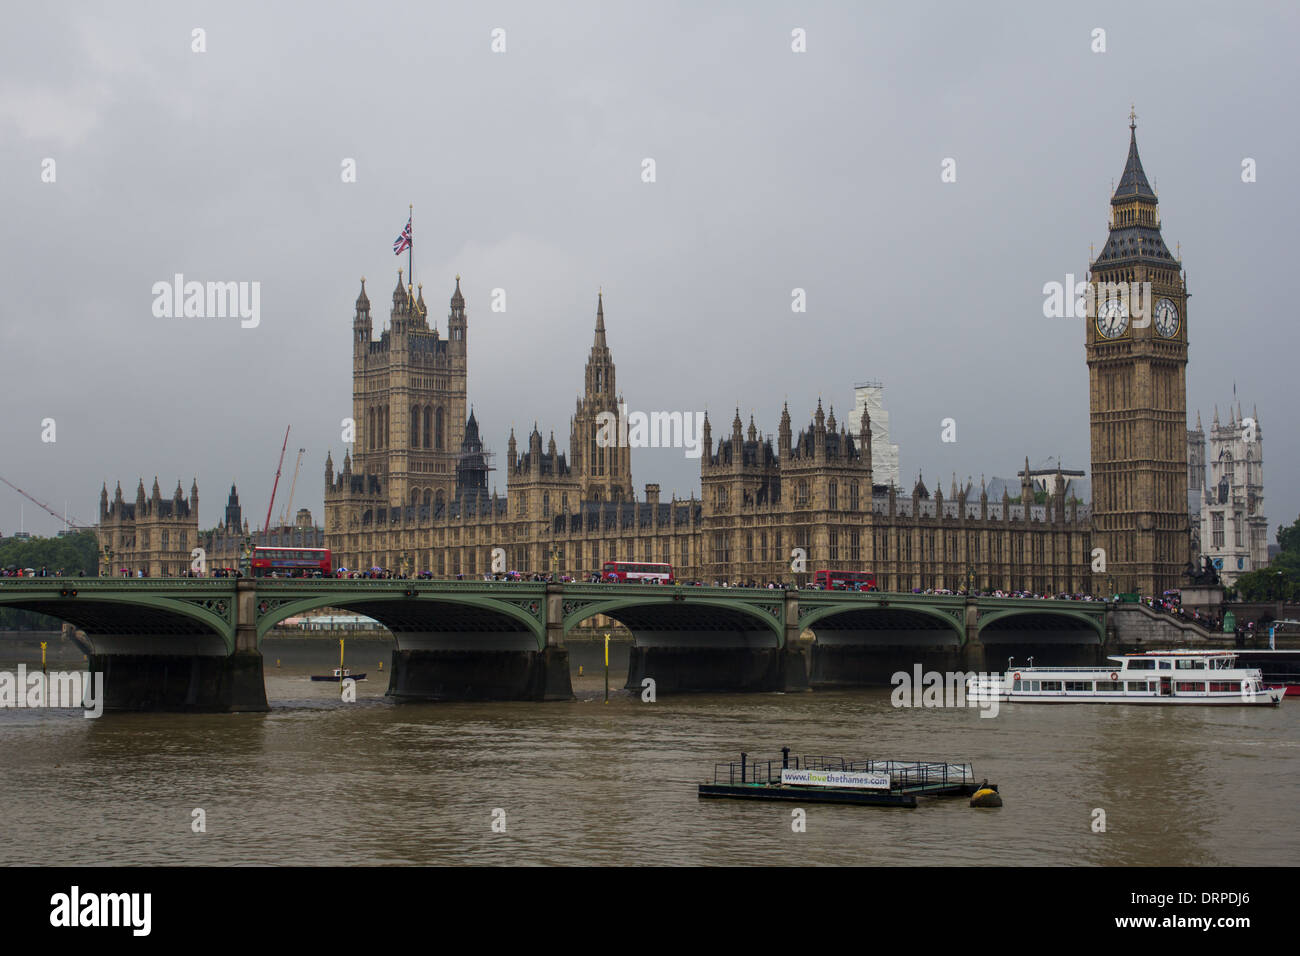 Londres, Royaume-Uni - 24 août 2013 : une vue de Westminster sur le côté lors d'un malheureux jour de pluie Banque D'Images